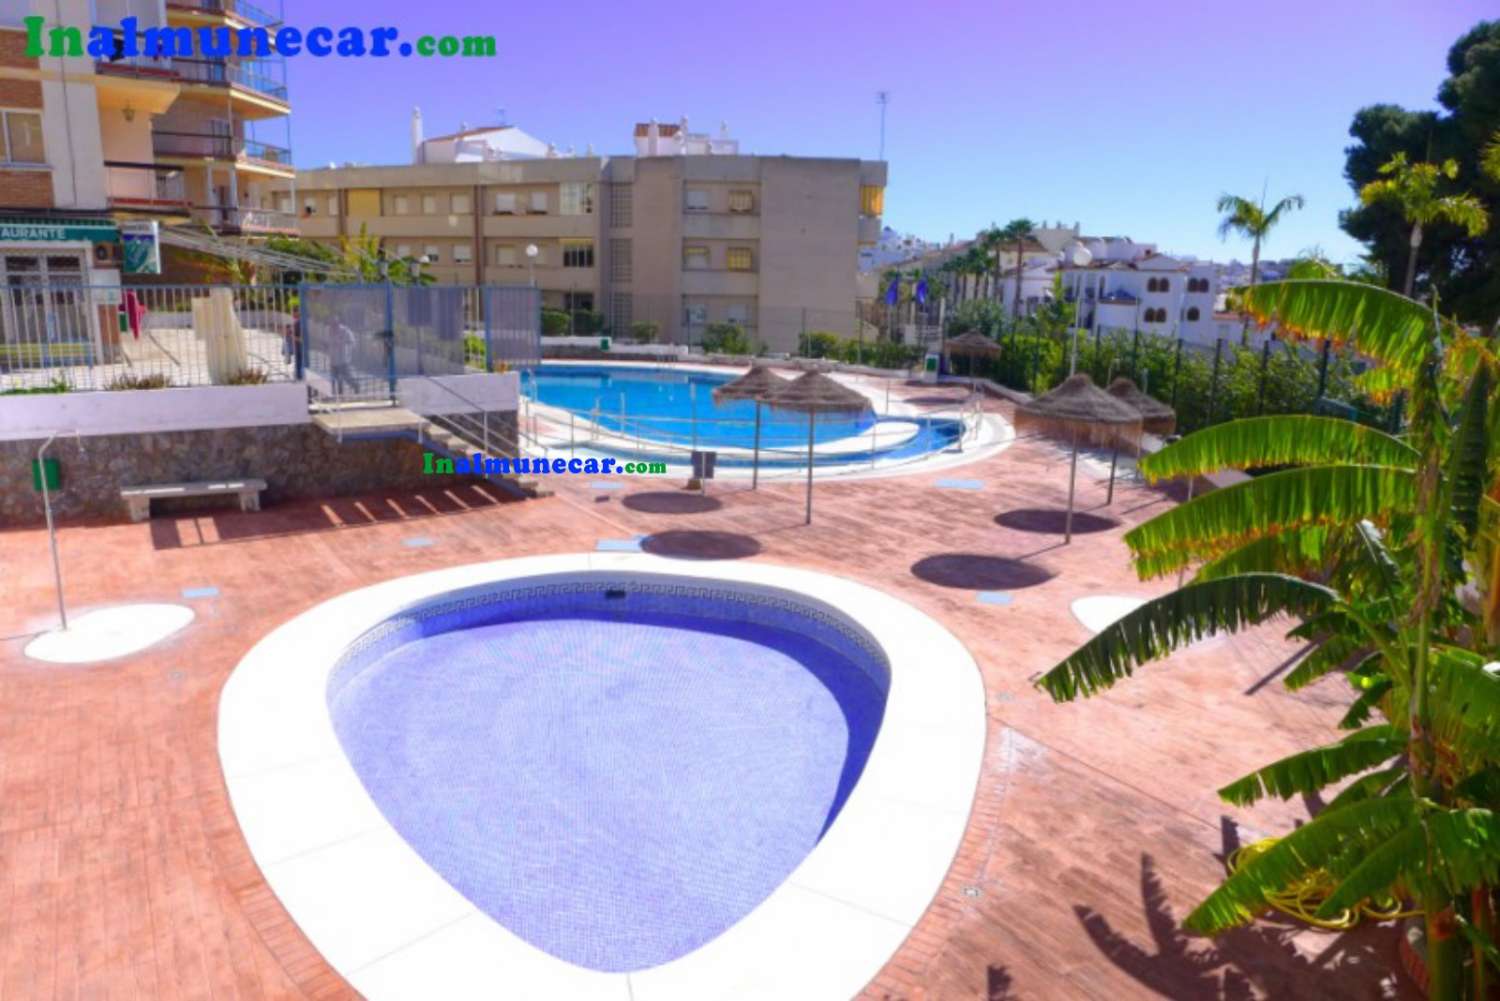 Lägenhet till salu i Almuñecar med pool och gemensam parkering